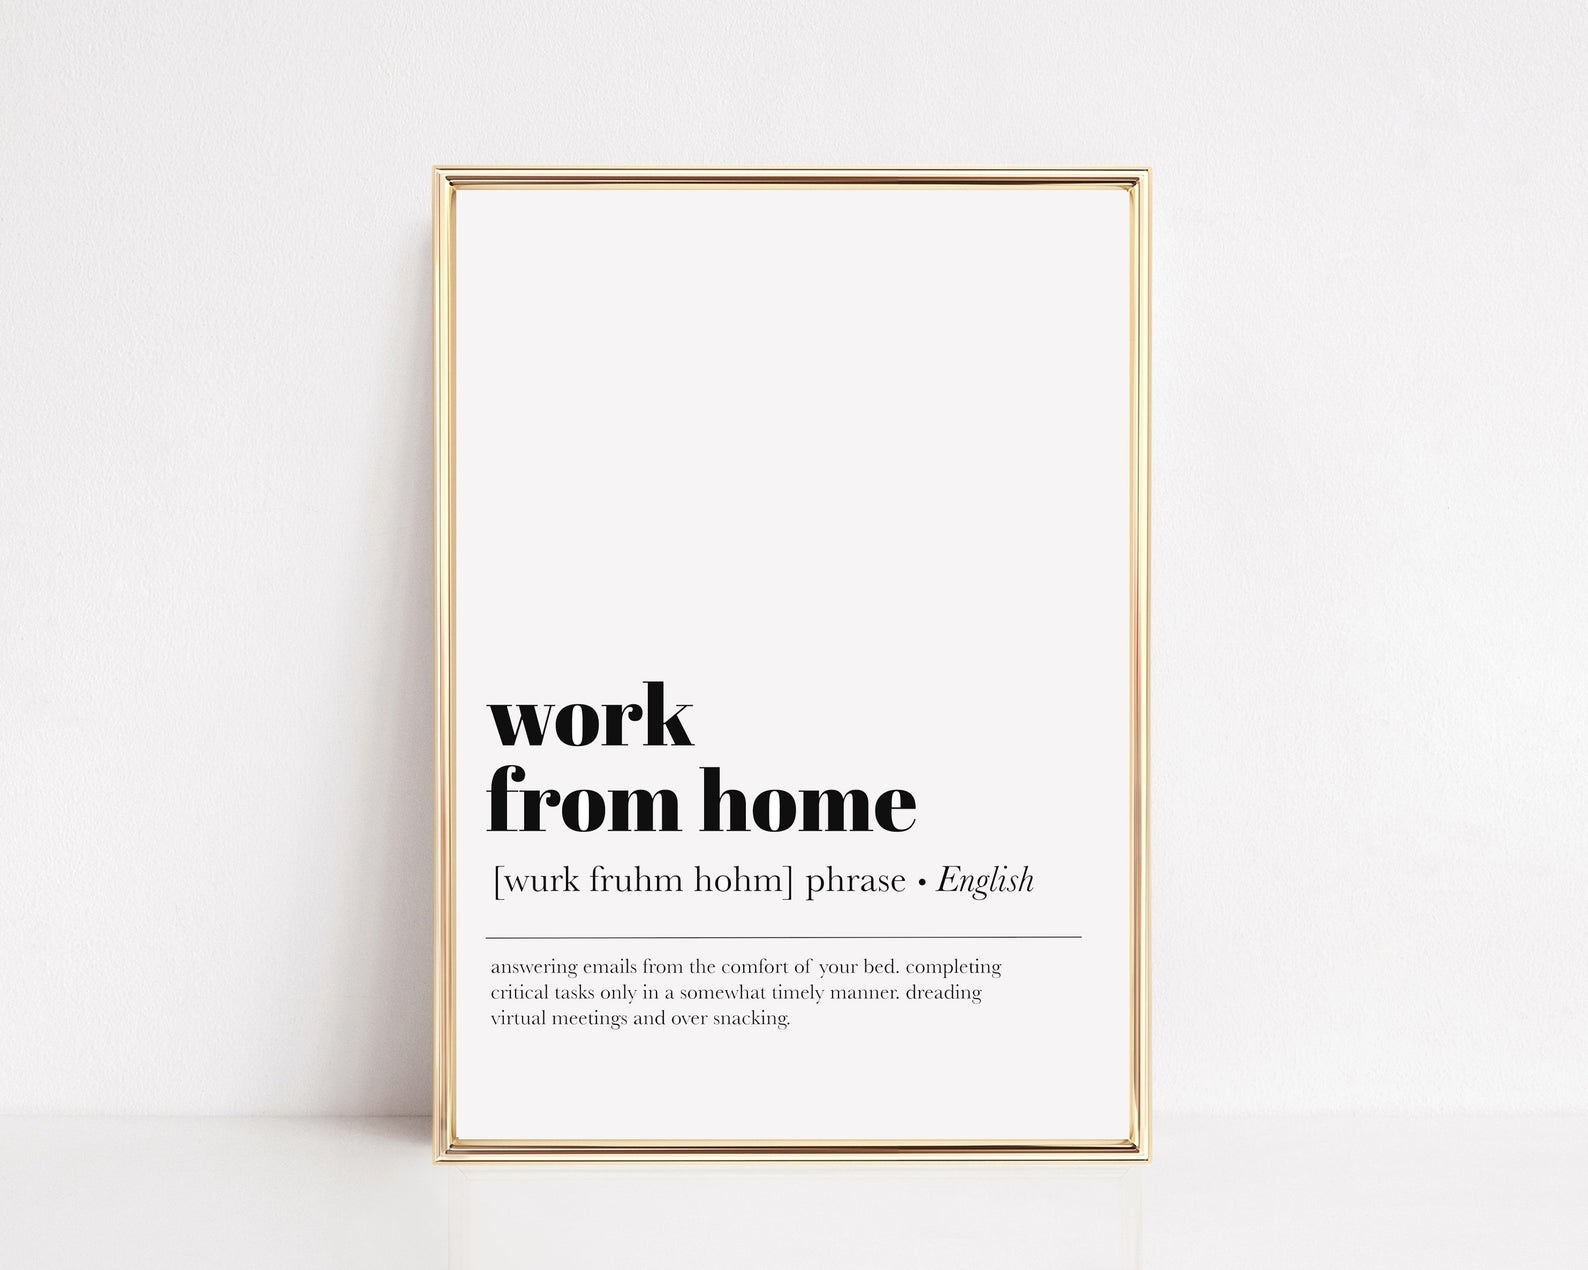 一个极简主义者打印说“从home"工作;的定义:“回答电子邮件在你舒适的床上,只在一种及时完成关键任务,害怕snacking"虚拟会议;”class=